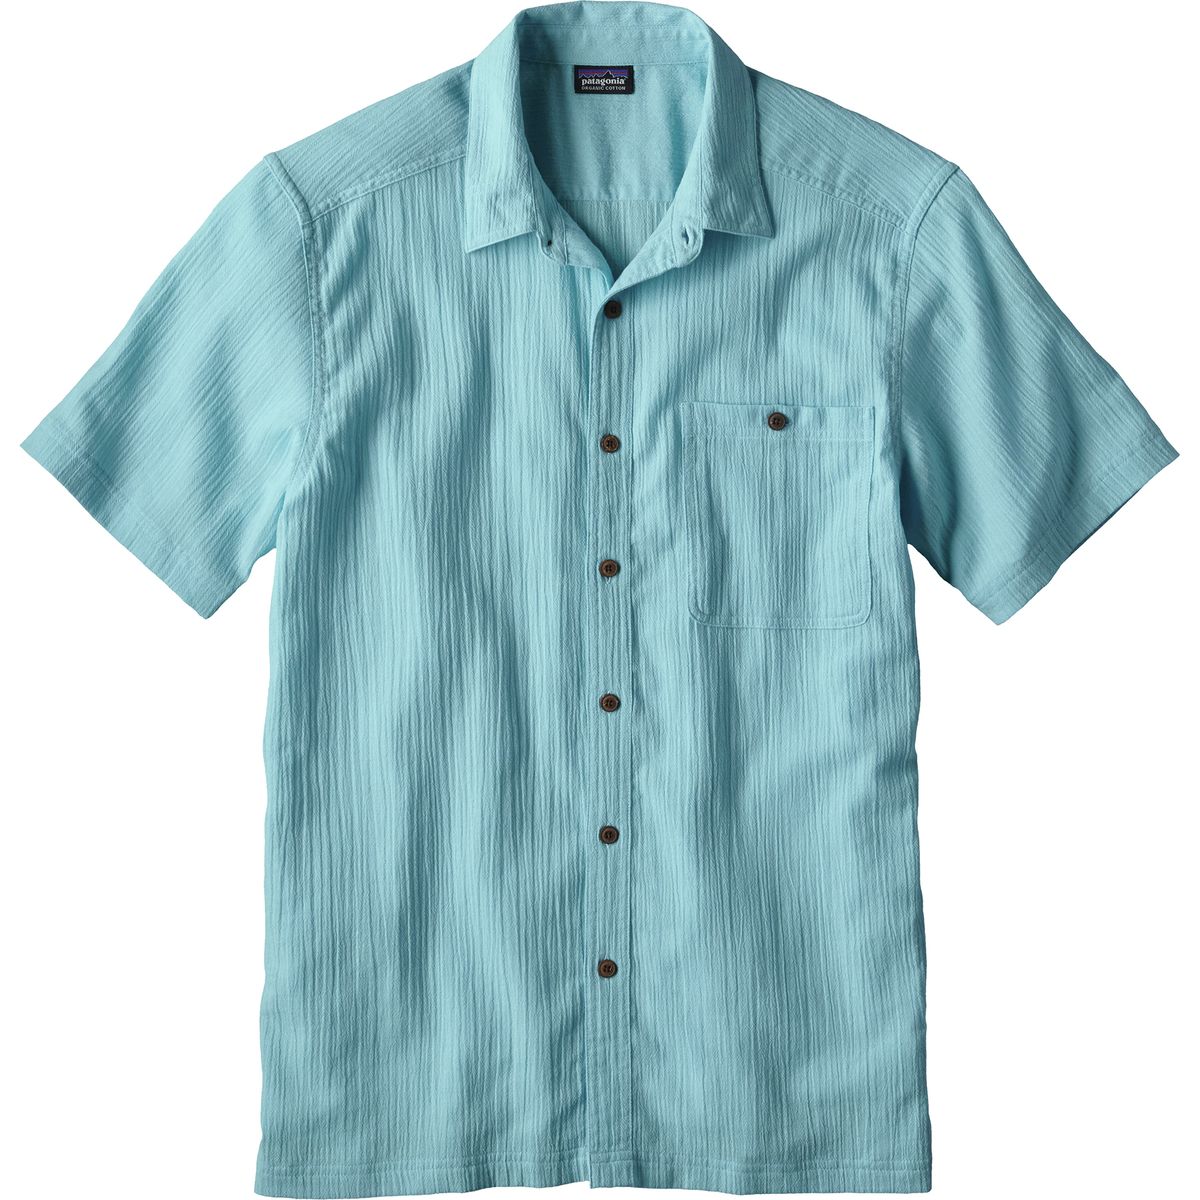 A/C Short-Sleeve Shirt - Men